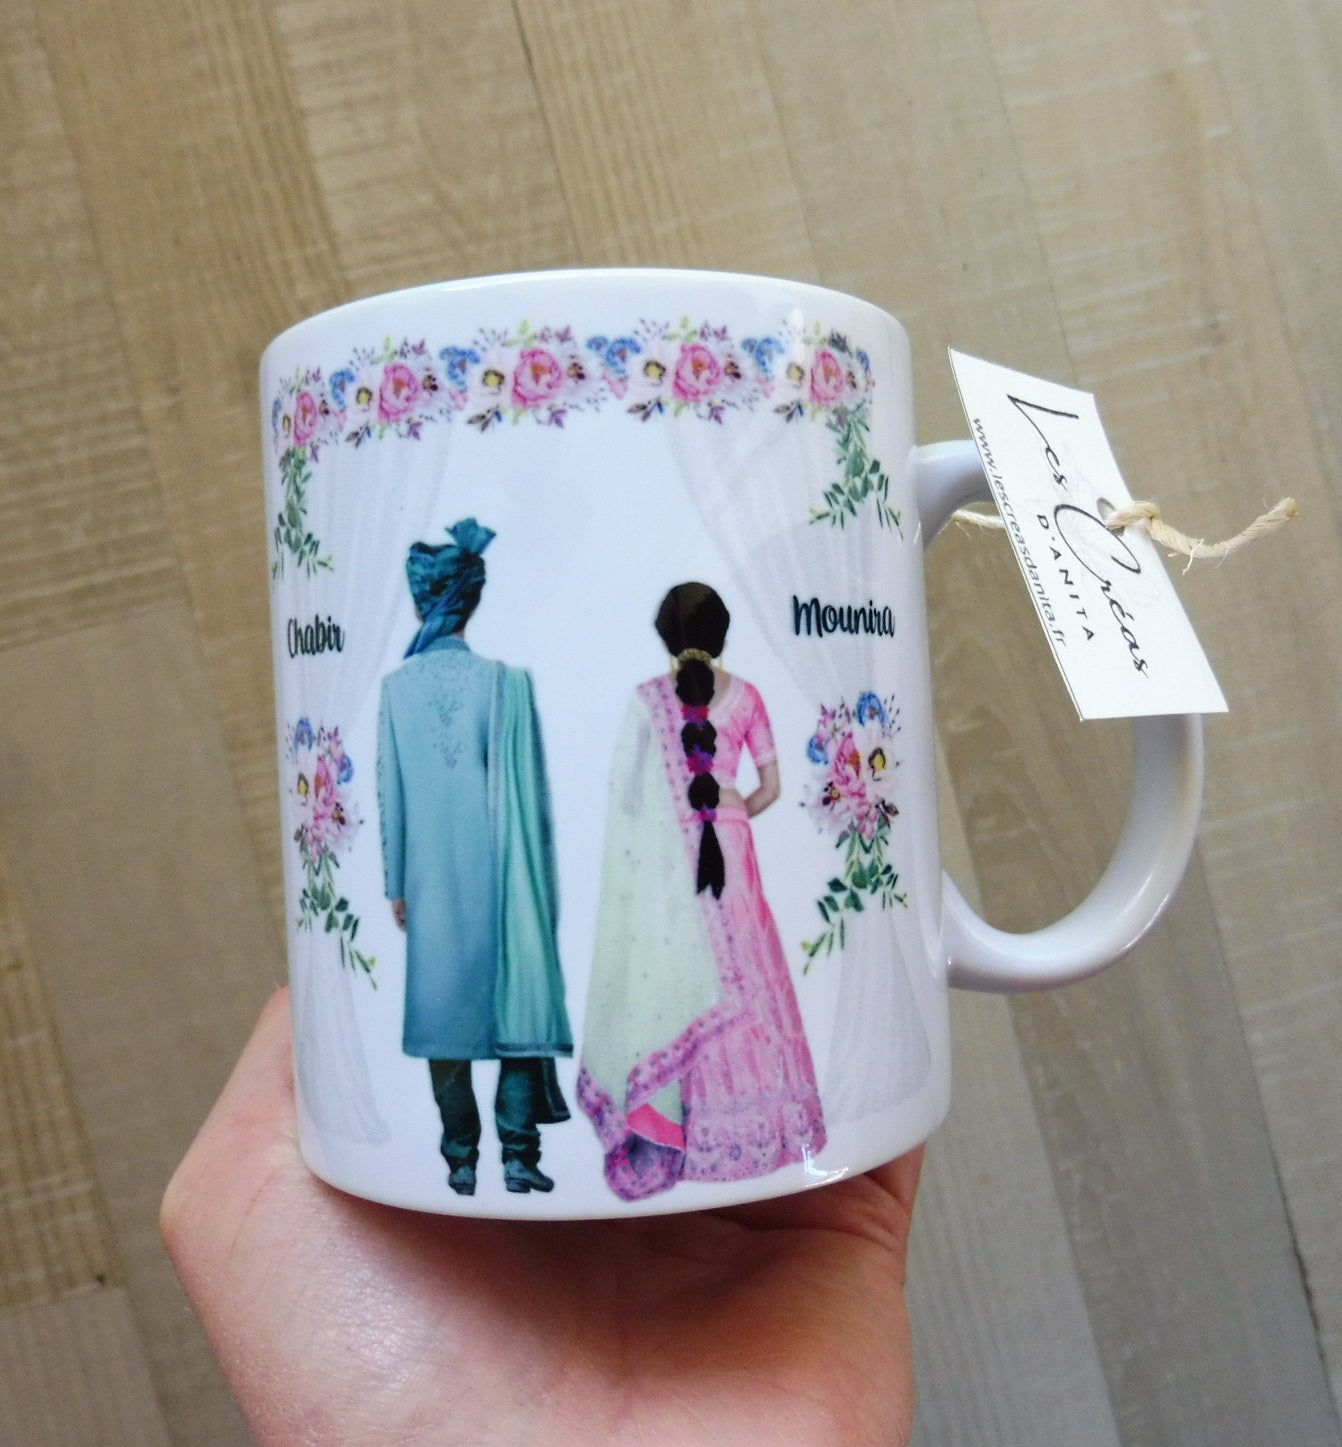 BOLLYWOOD Indian couple personalized mug